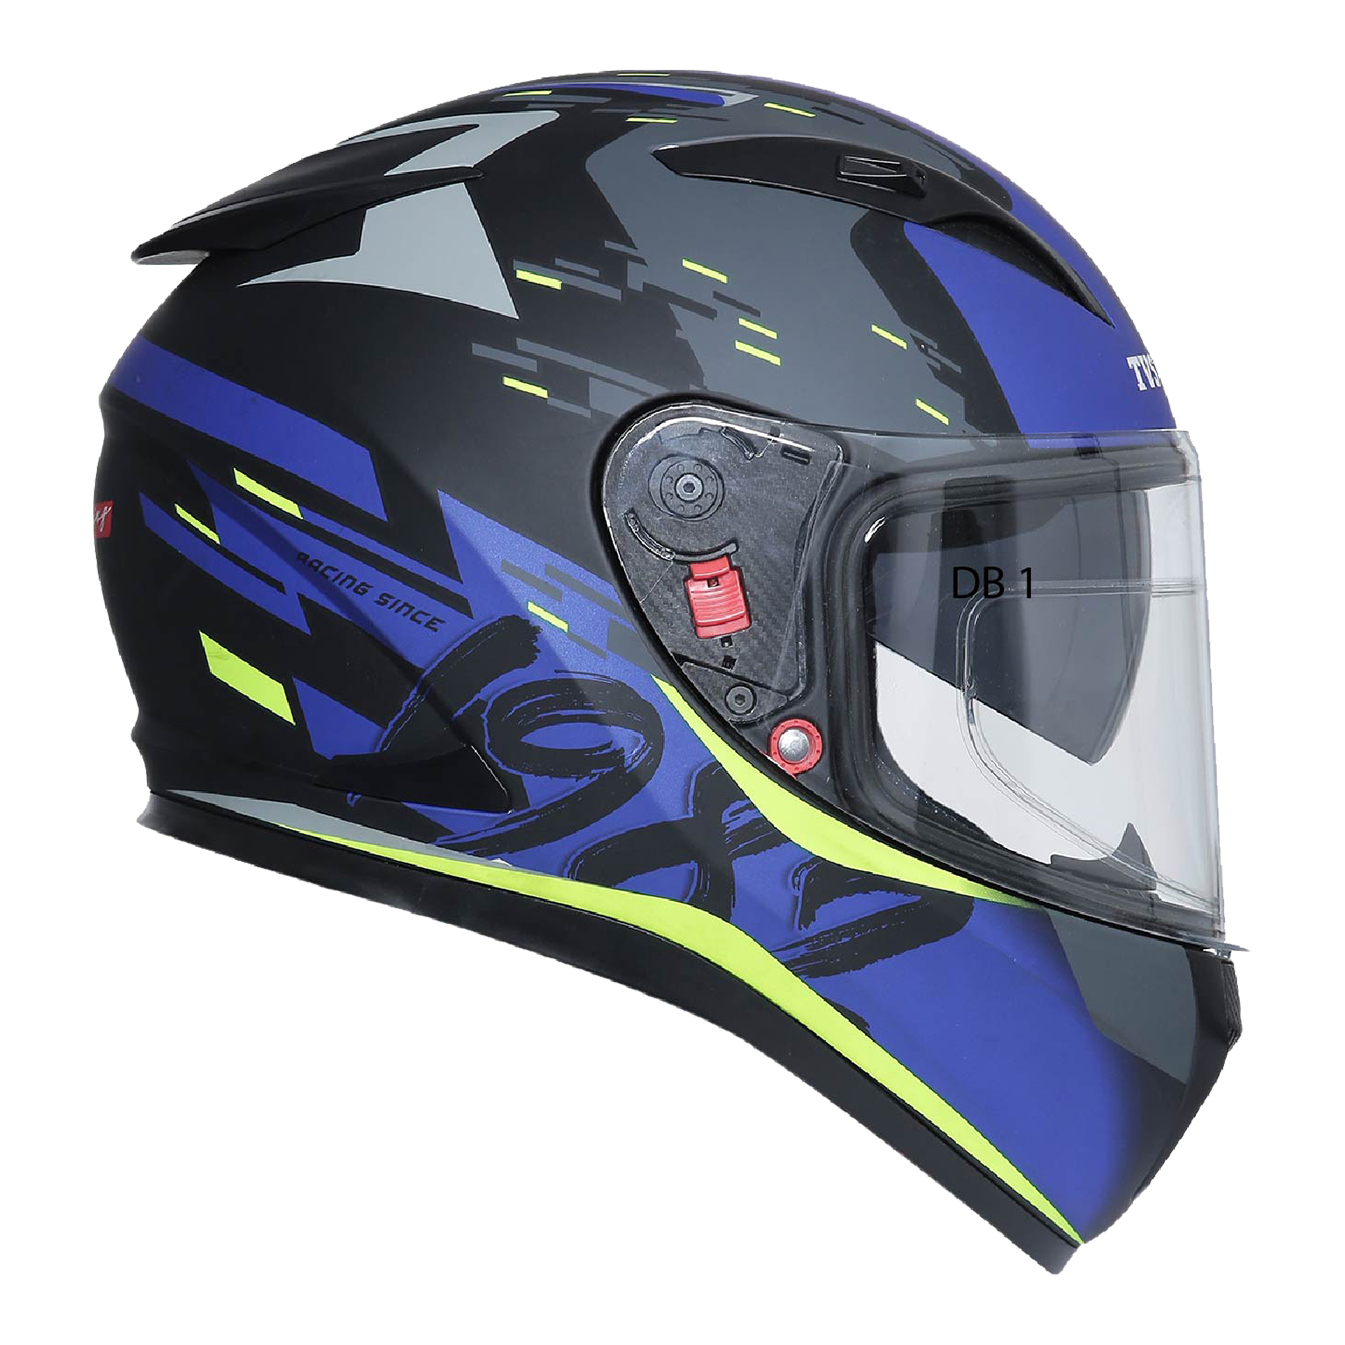  TVS Racing Helmet Matt Neon & Blue - Dual Visor